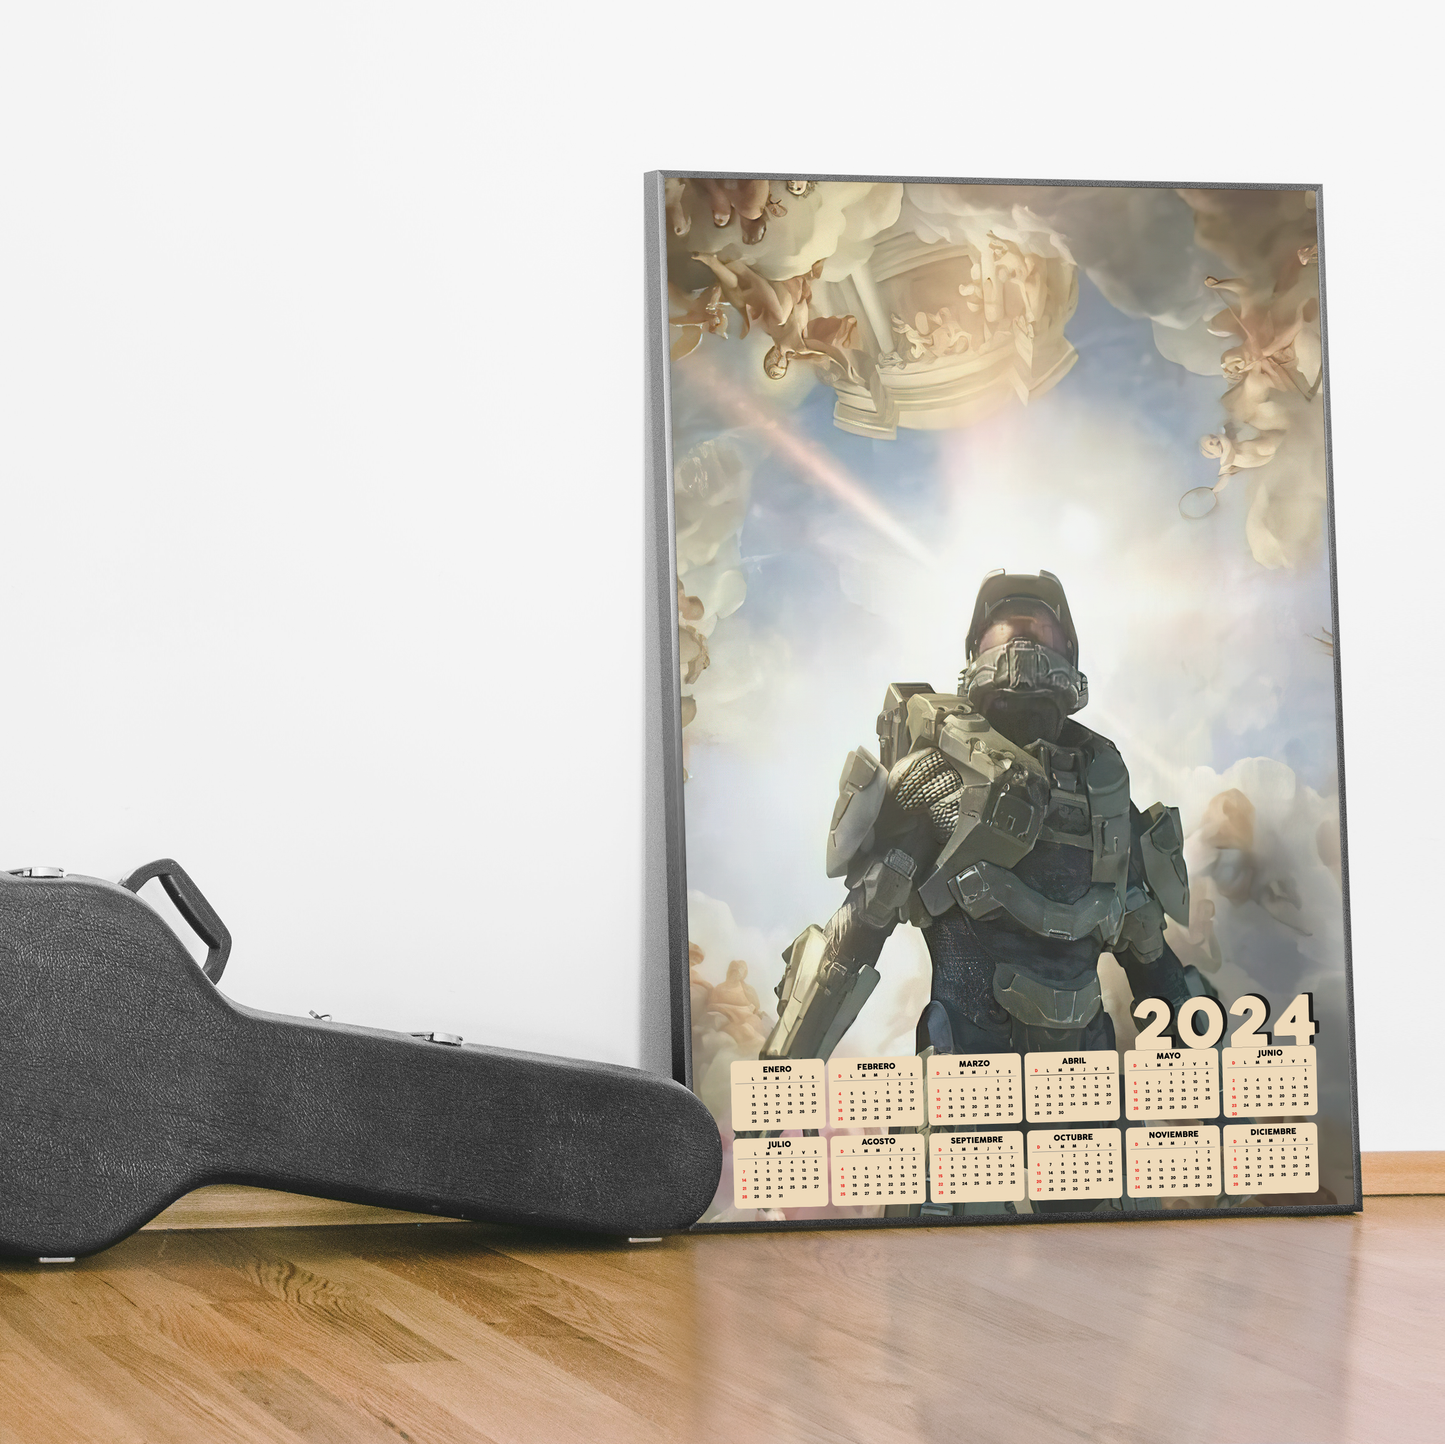 Poster / Calendario Halo